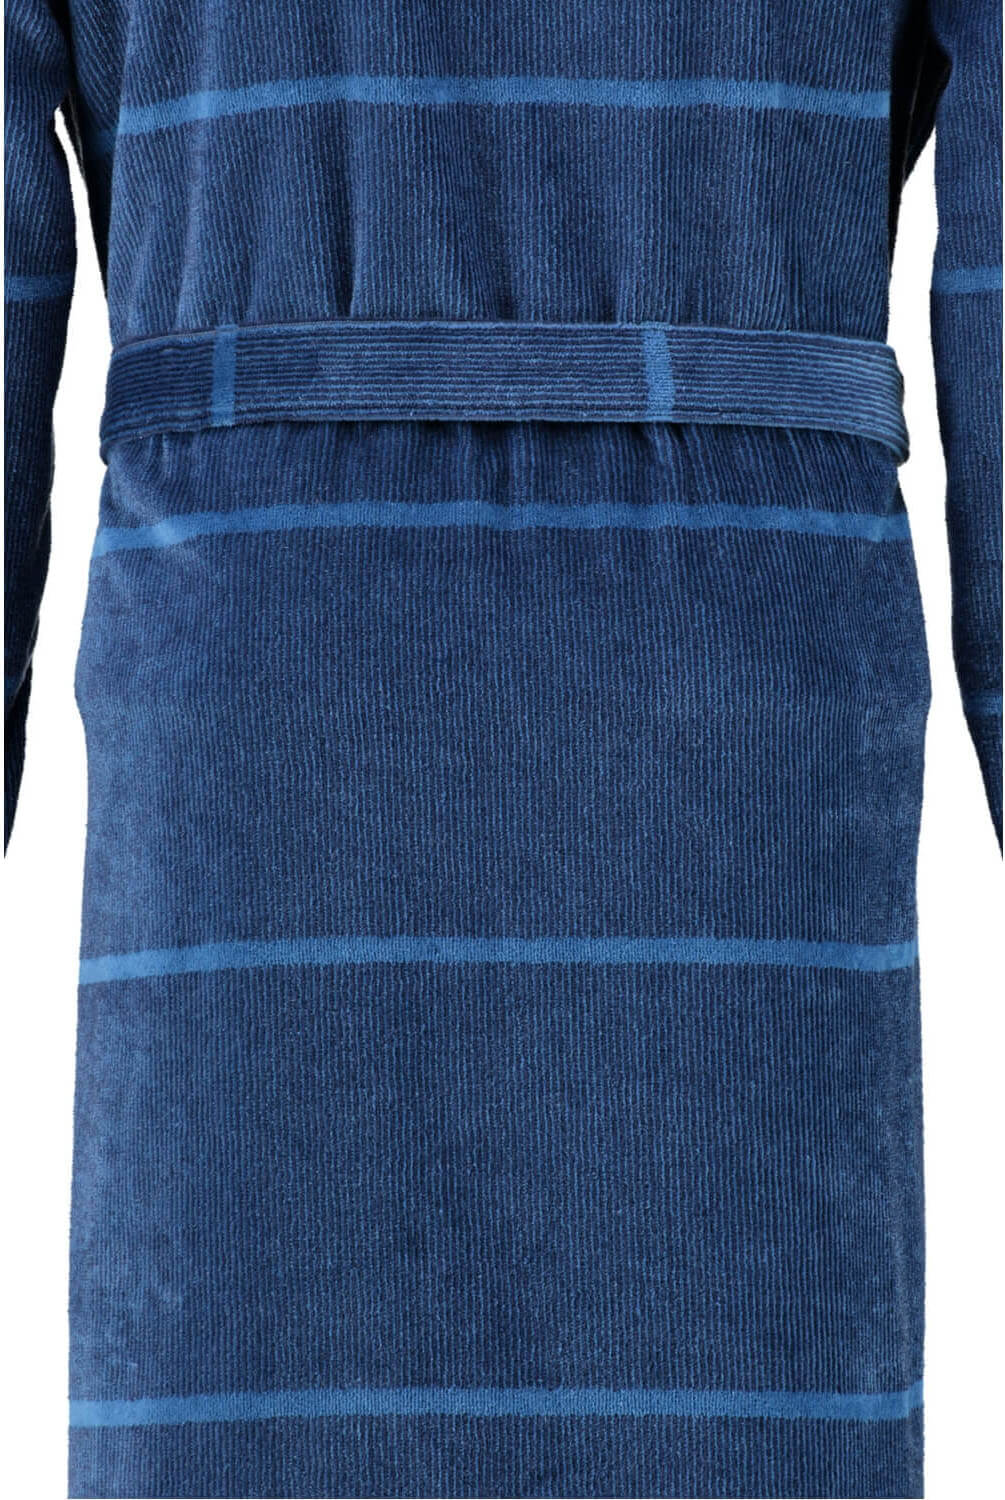 Мужской халат Cawo Kimono Blau ☞ Размер: 50